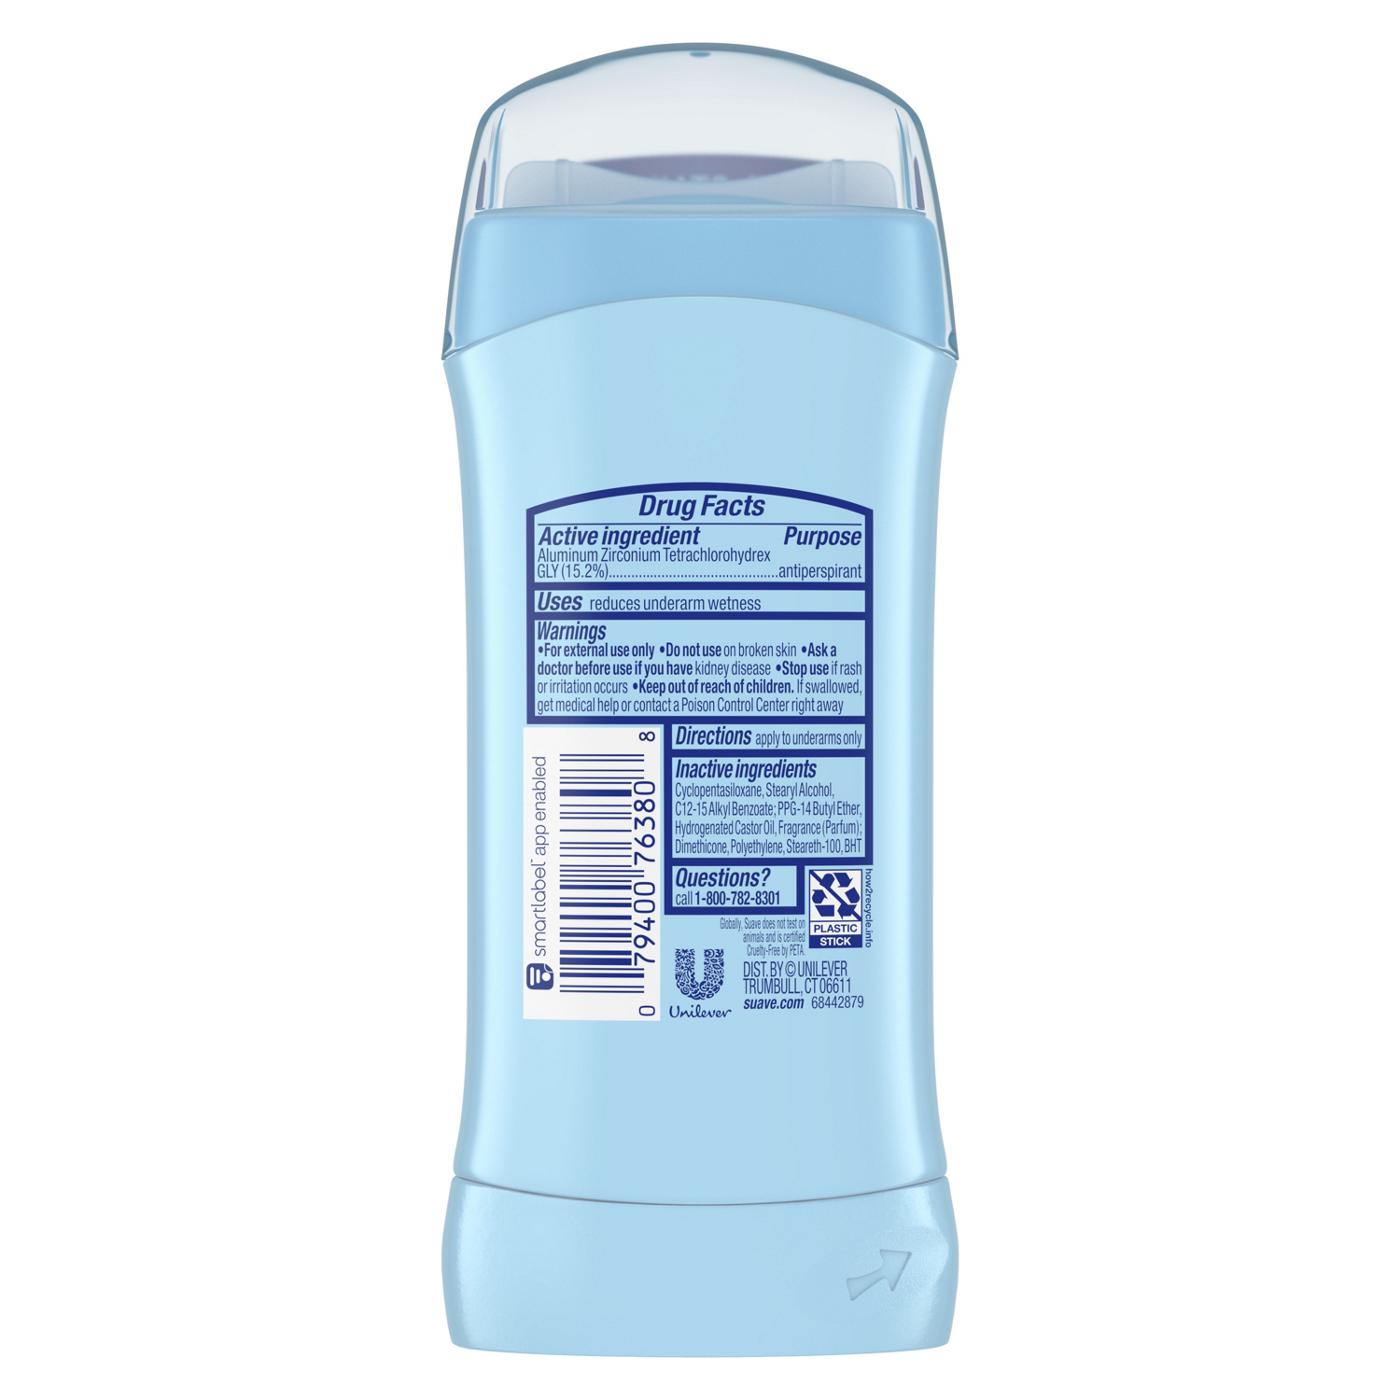 Suave Antiperspirant Deodorant Stick - Powder; image 6 of 7